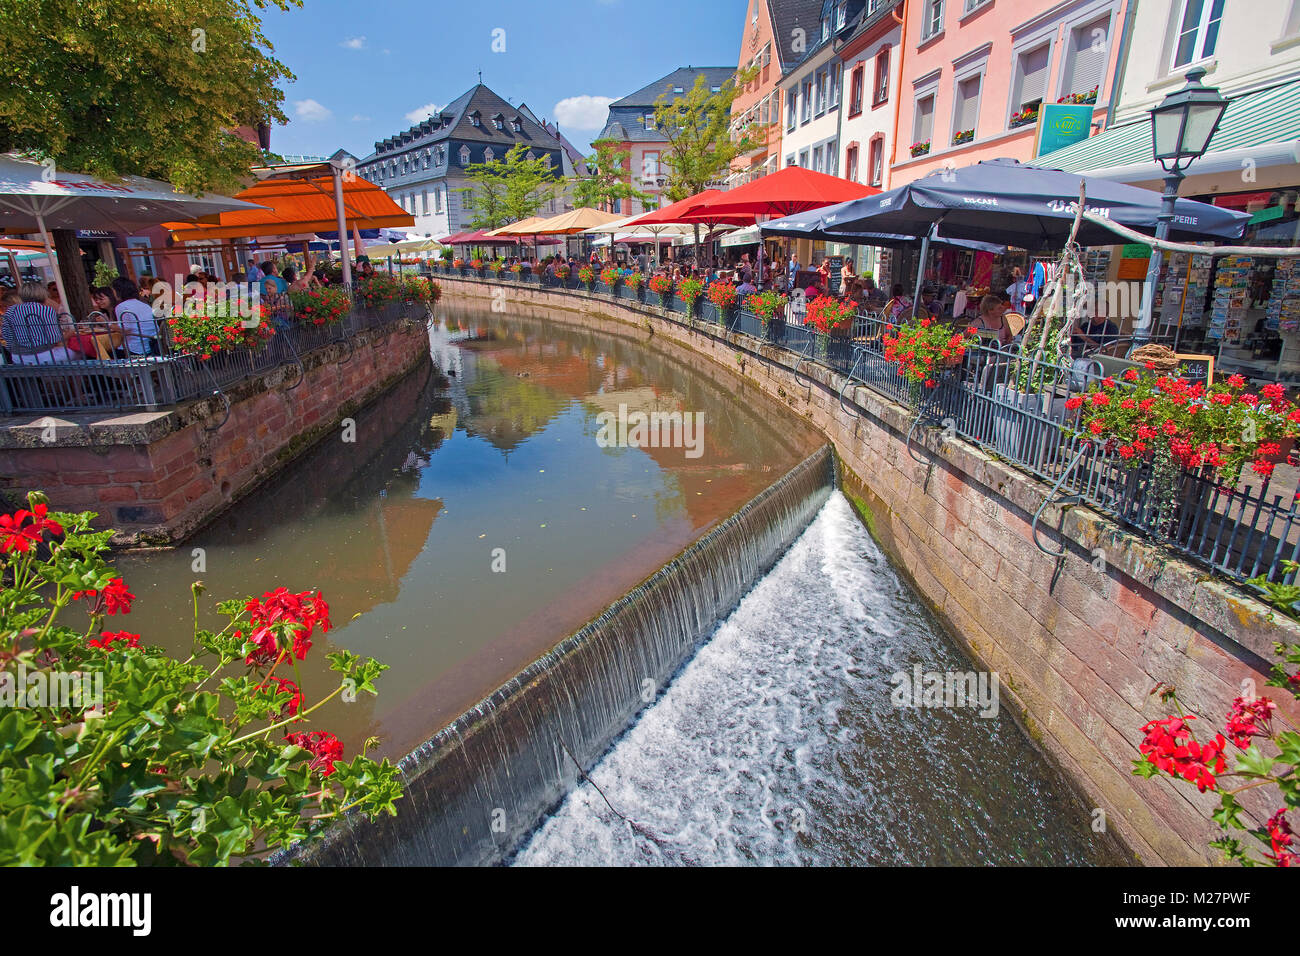 La cascata Leukbach alla città vecchia di Saarburg, Renania-Palatinato, Germania, Europa Foto Stock